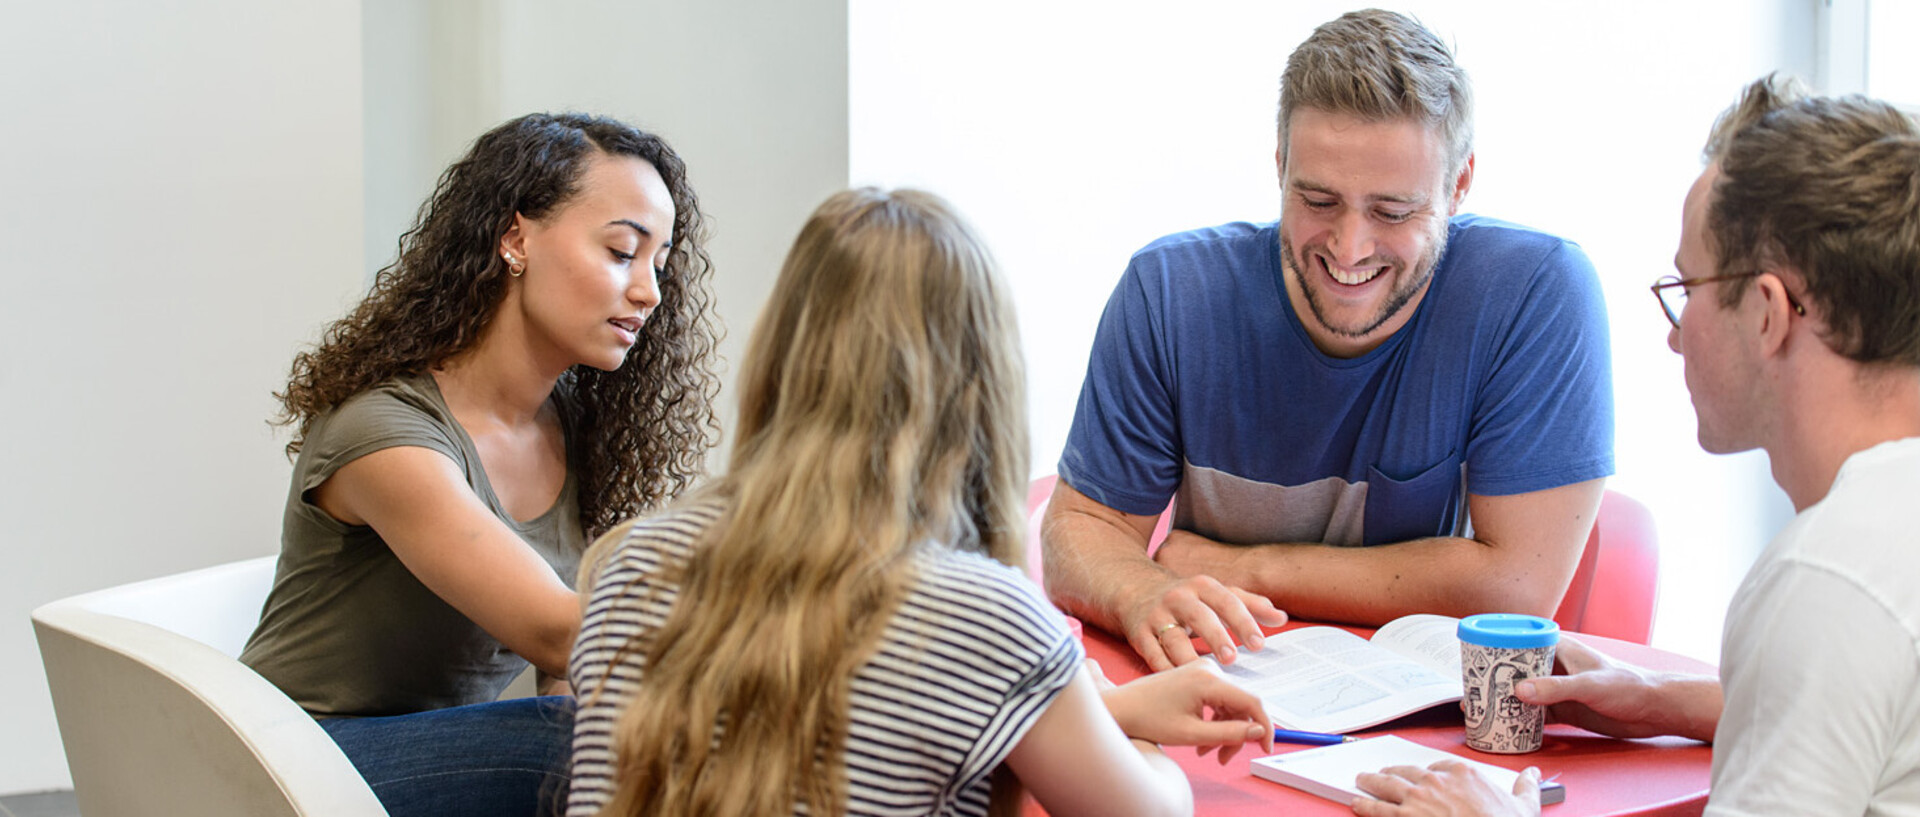 Vier Studierende sitzen an einem roten, runden Tisch und lernen gemeinsam.